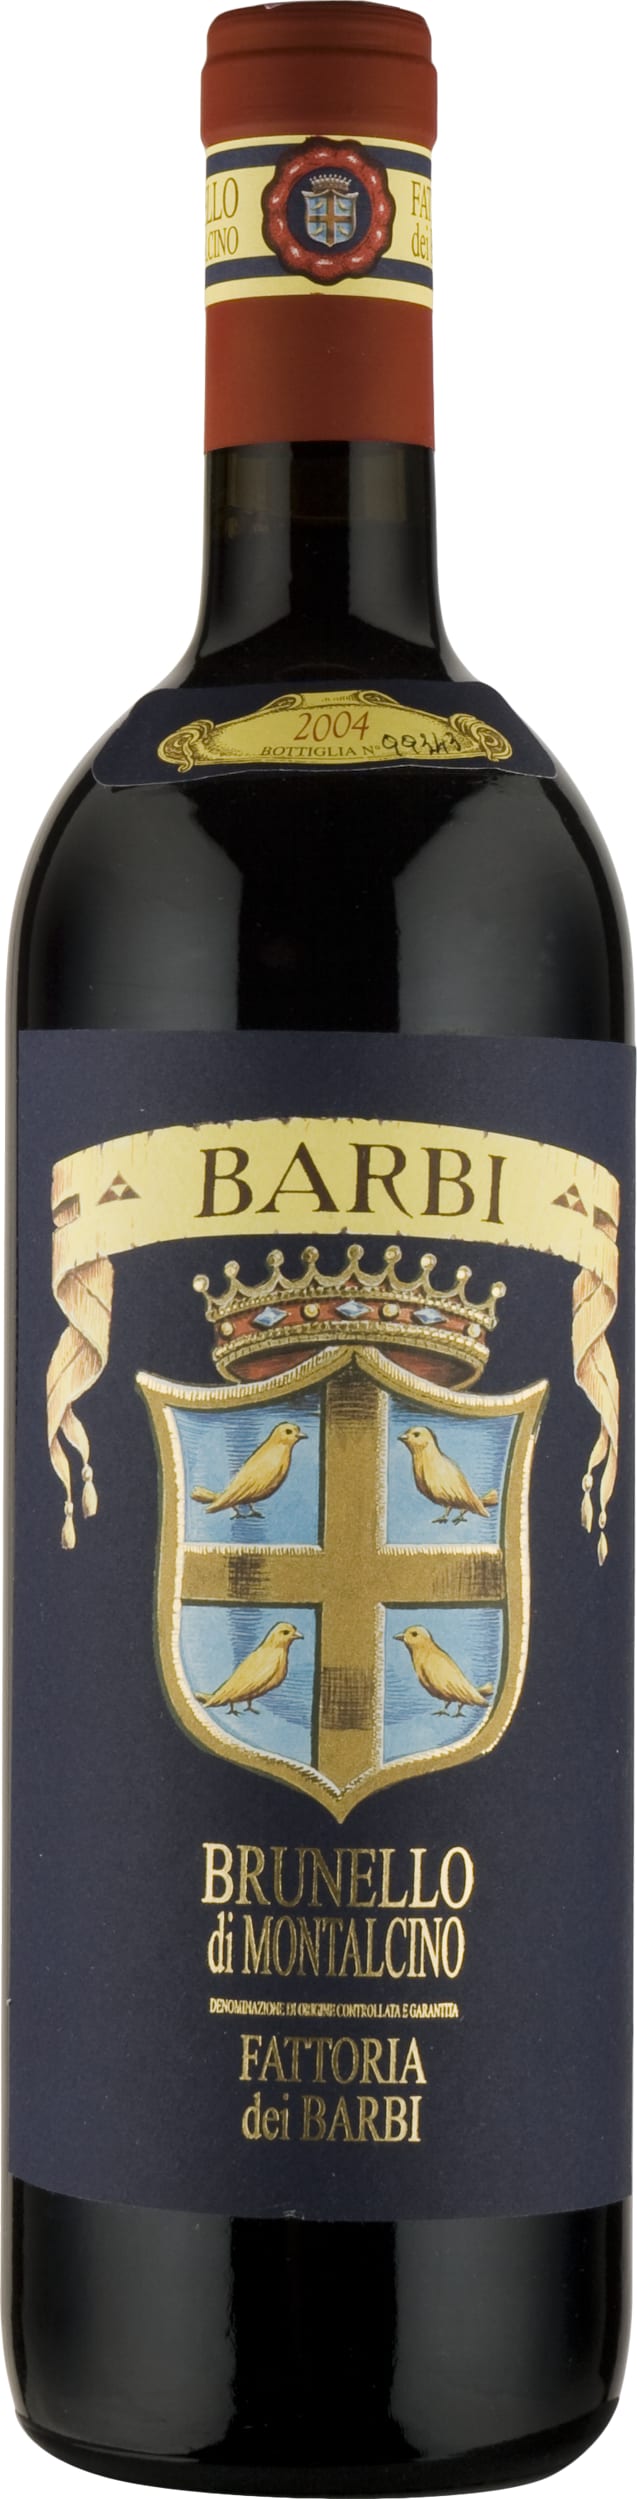 Fattoria dei Barbi Brunello di Montalcino 2017 75cl - Buy Fattoria dei Barbi Wines from GREAT WINES DIRECT wine shop